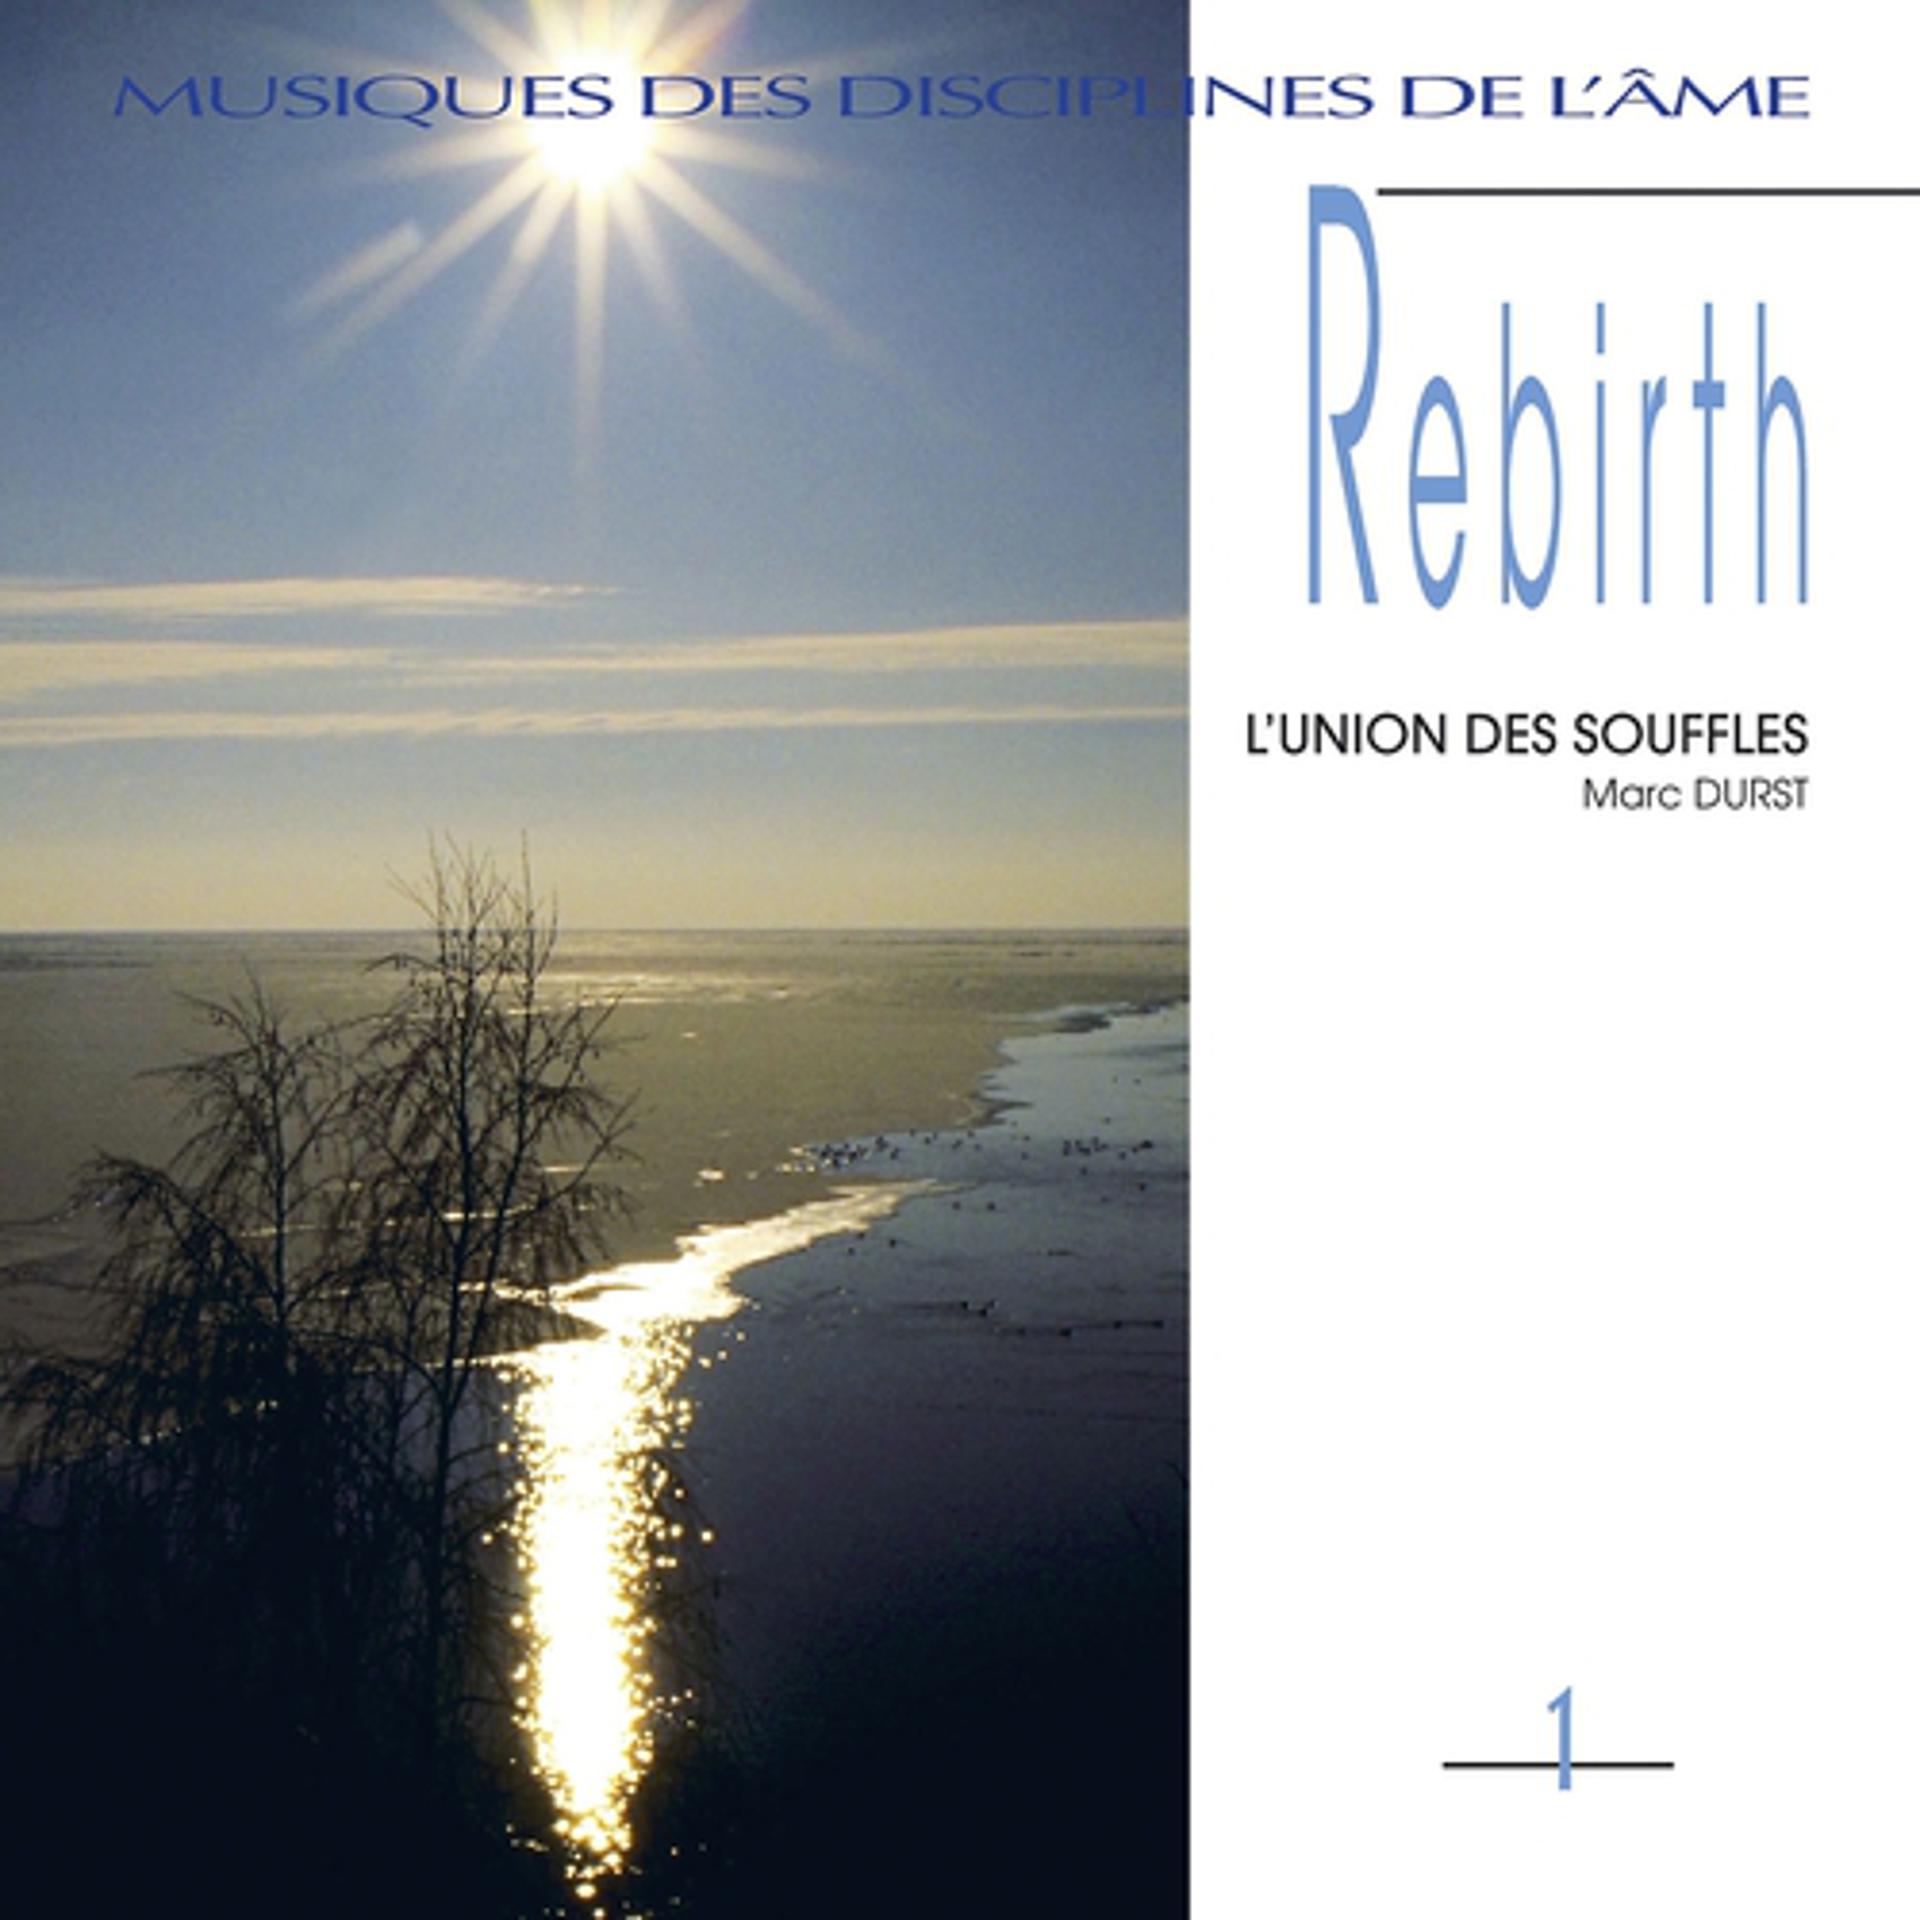 Постер альбома Musiques des disciplines de l'âme: rebirth